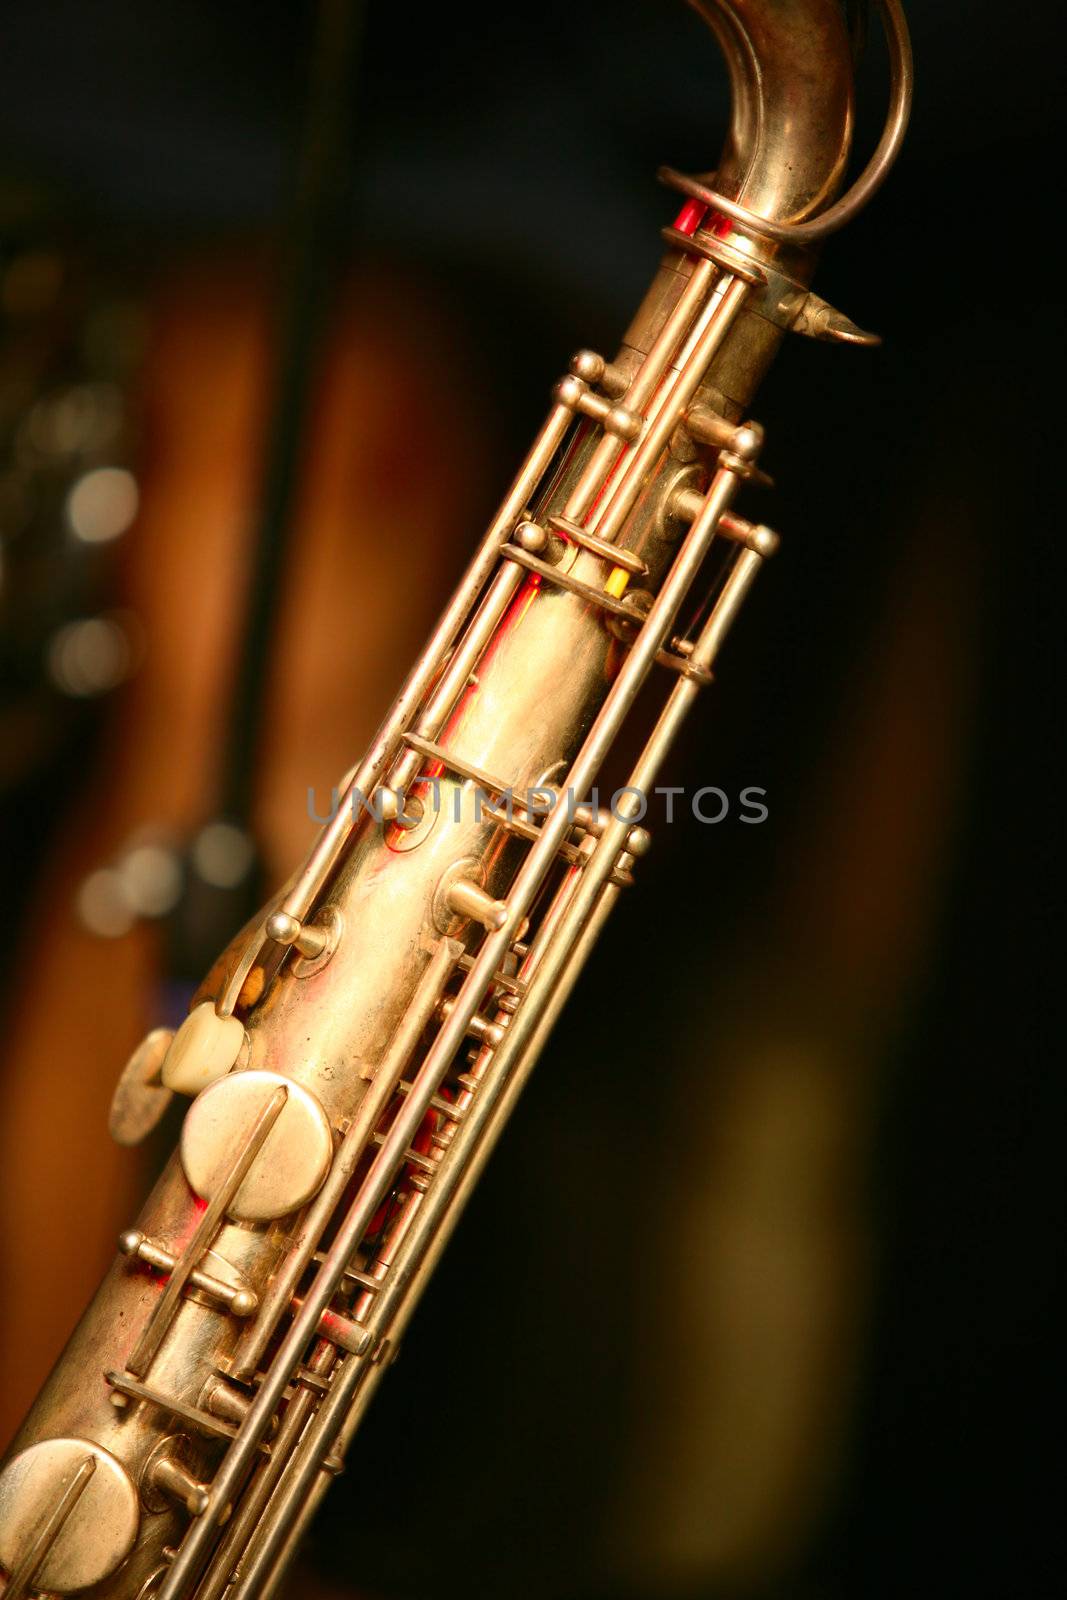 Vintage Saxophone on black background